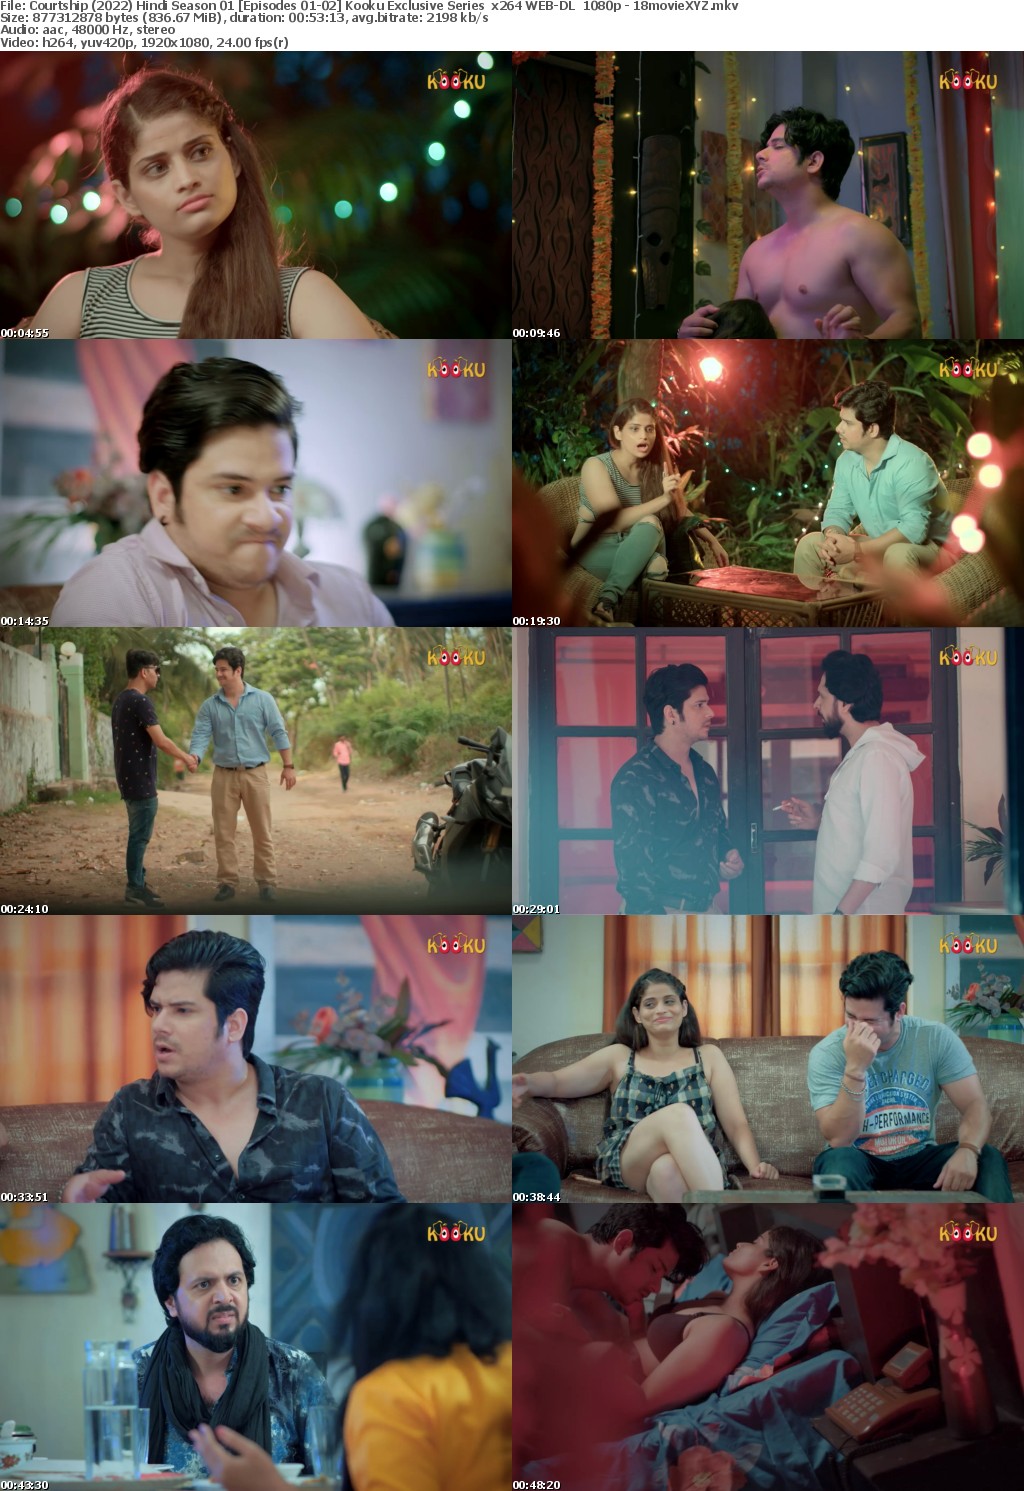 Courtship (2022) Hindi Season 01 Episodes 01-02 Kooku Exclusive Series | x264 WEB-DL | 1080p - 18movieXYZ